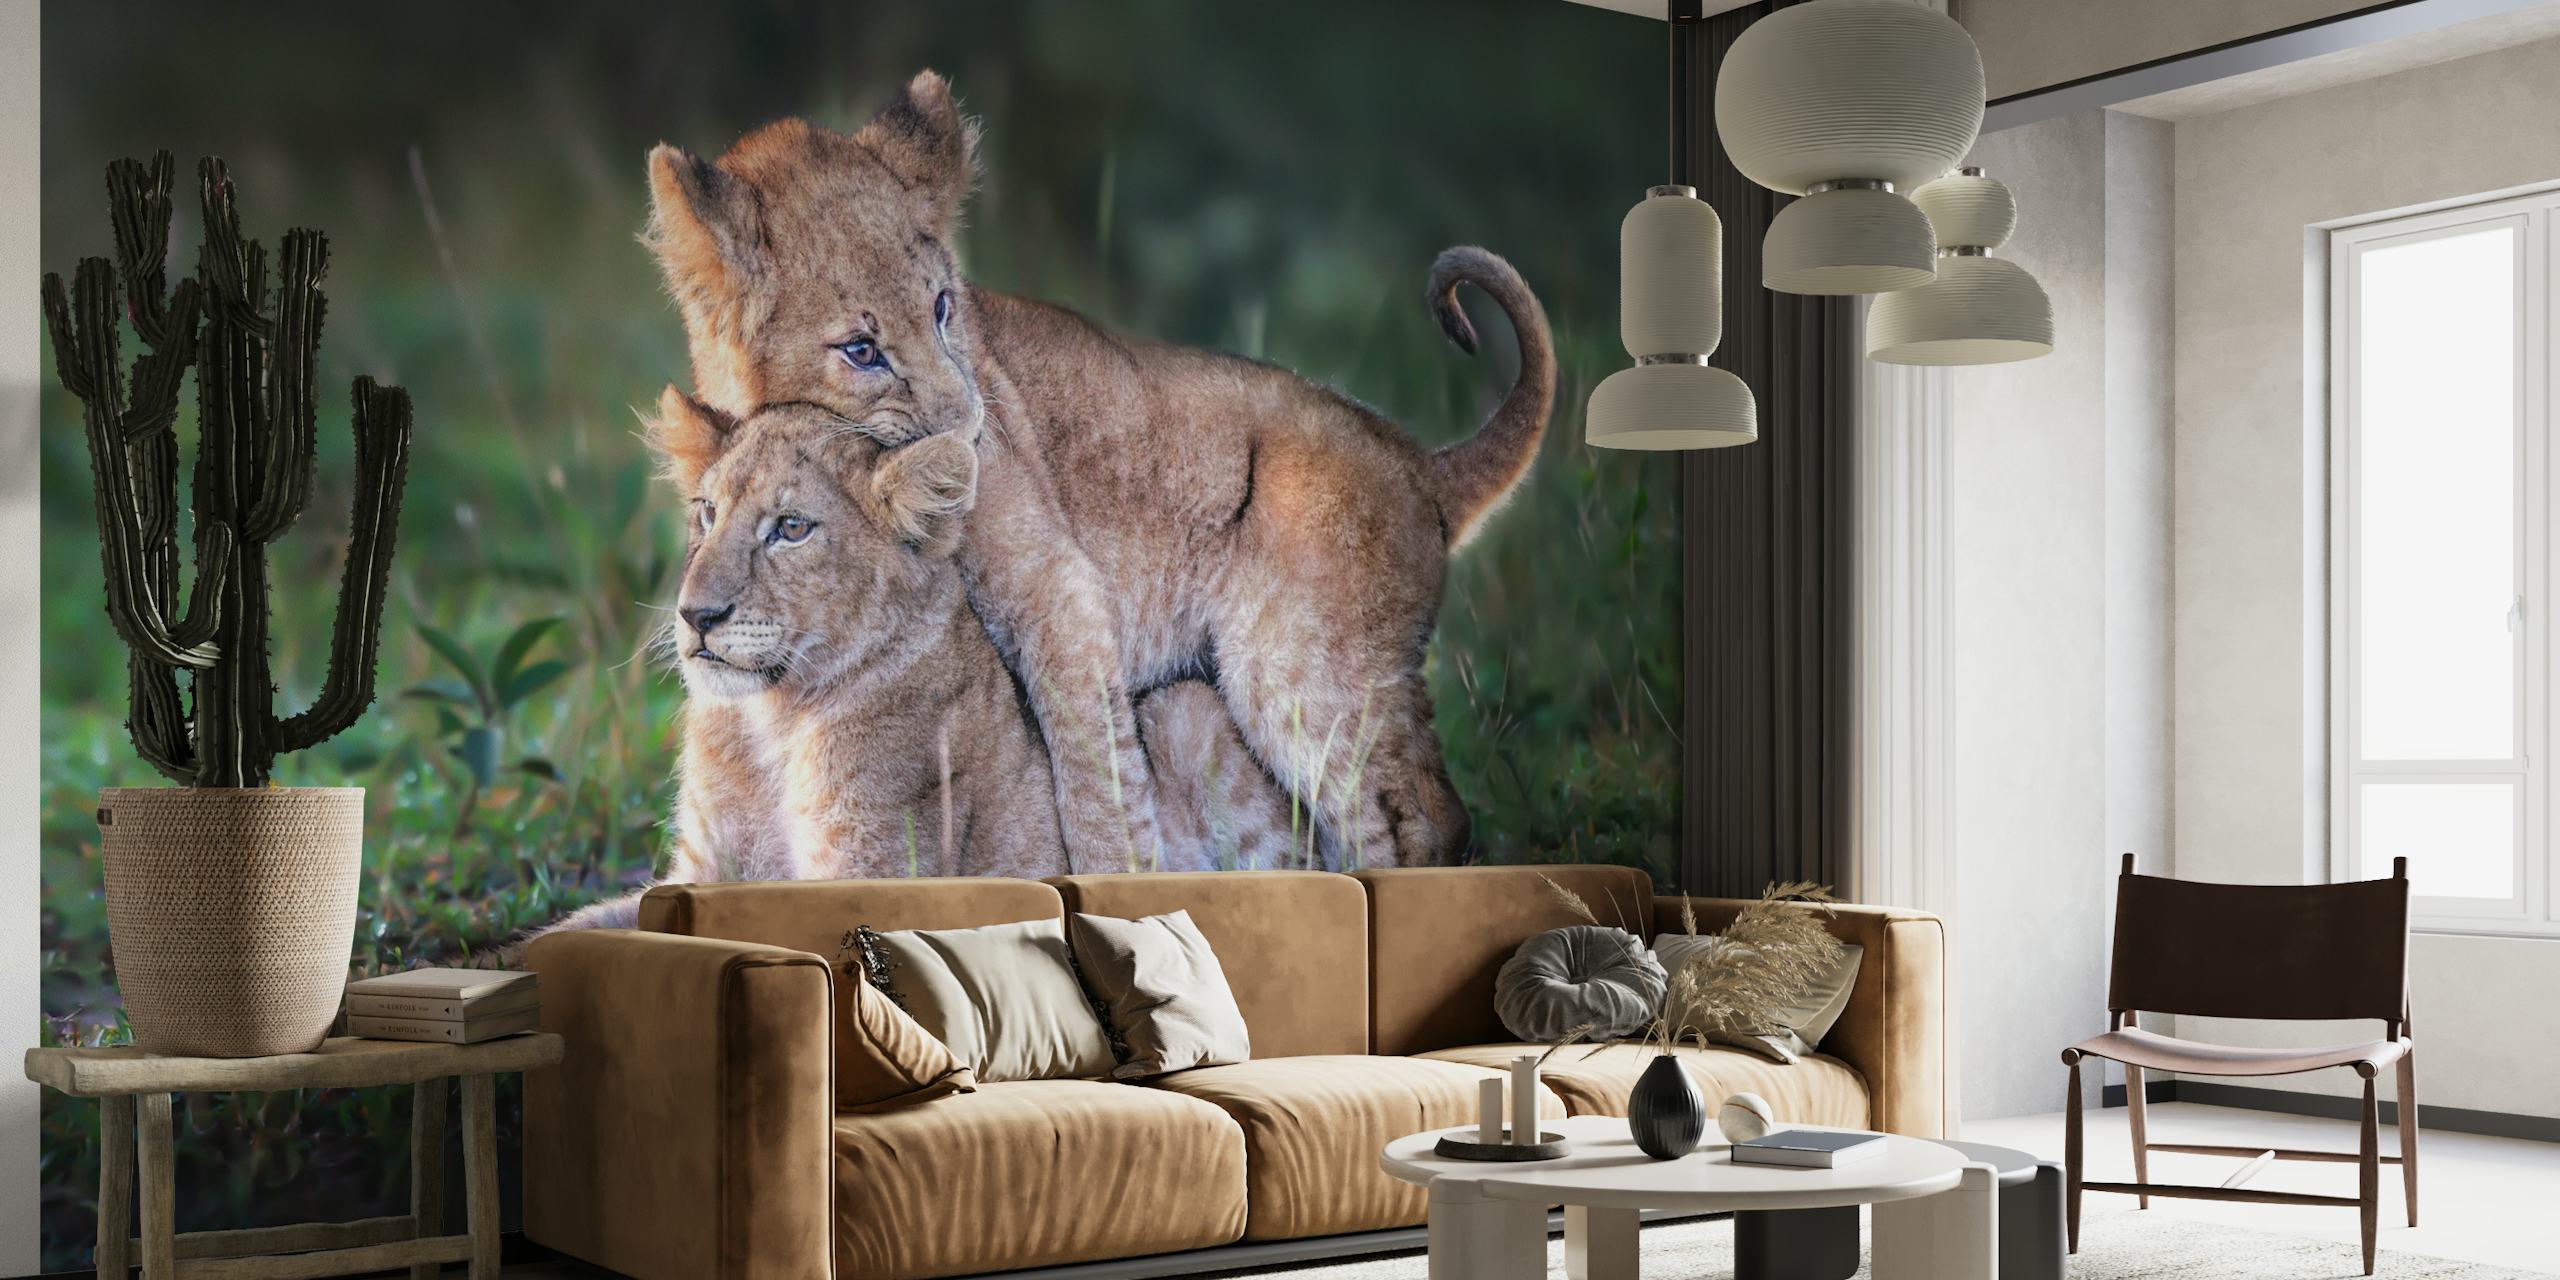 Playful lion cubs papel pintado